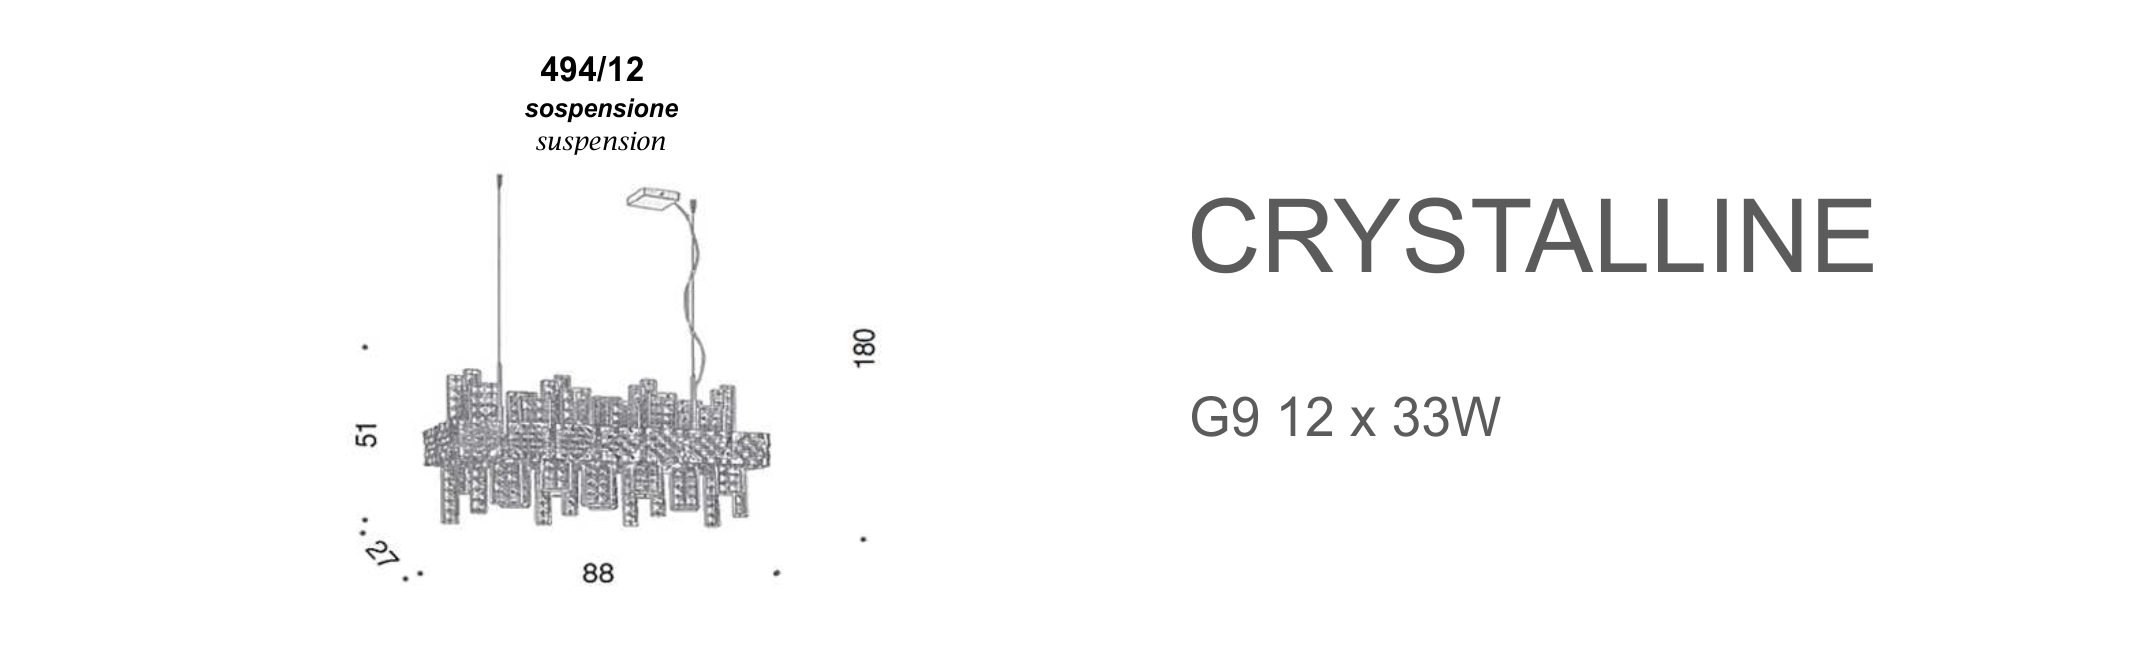 Crystalline 494/12